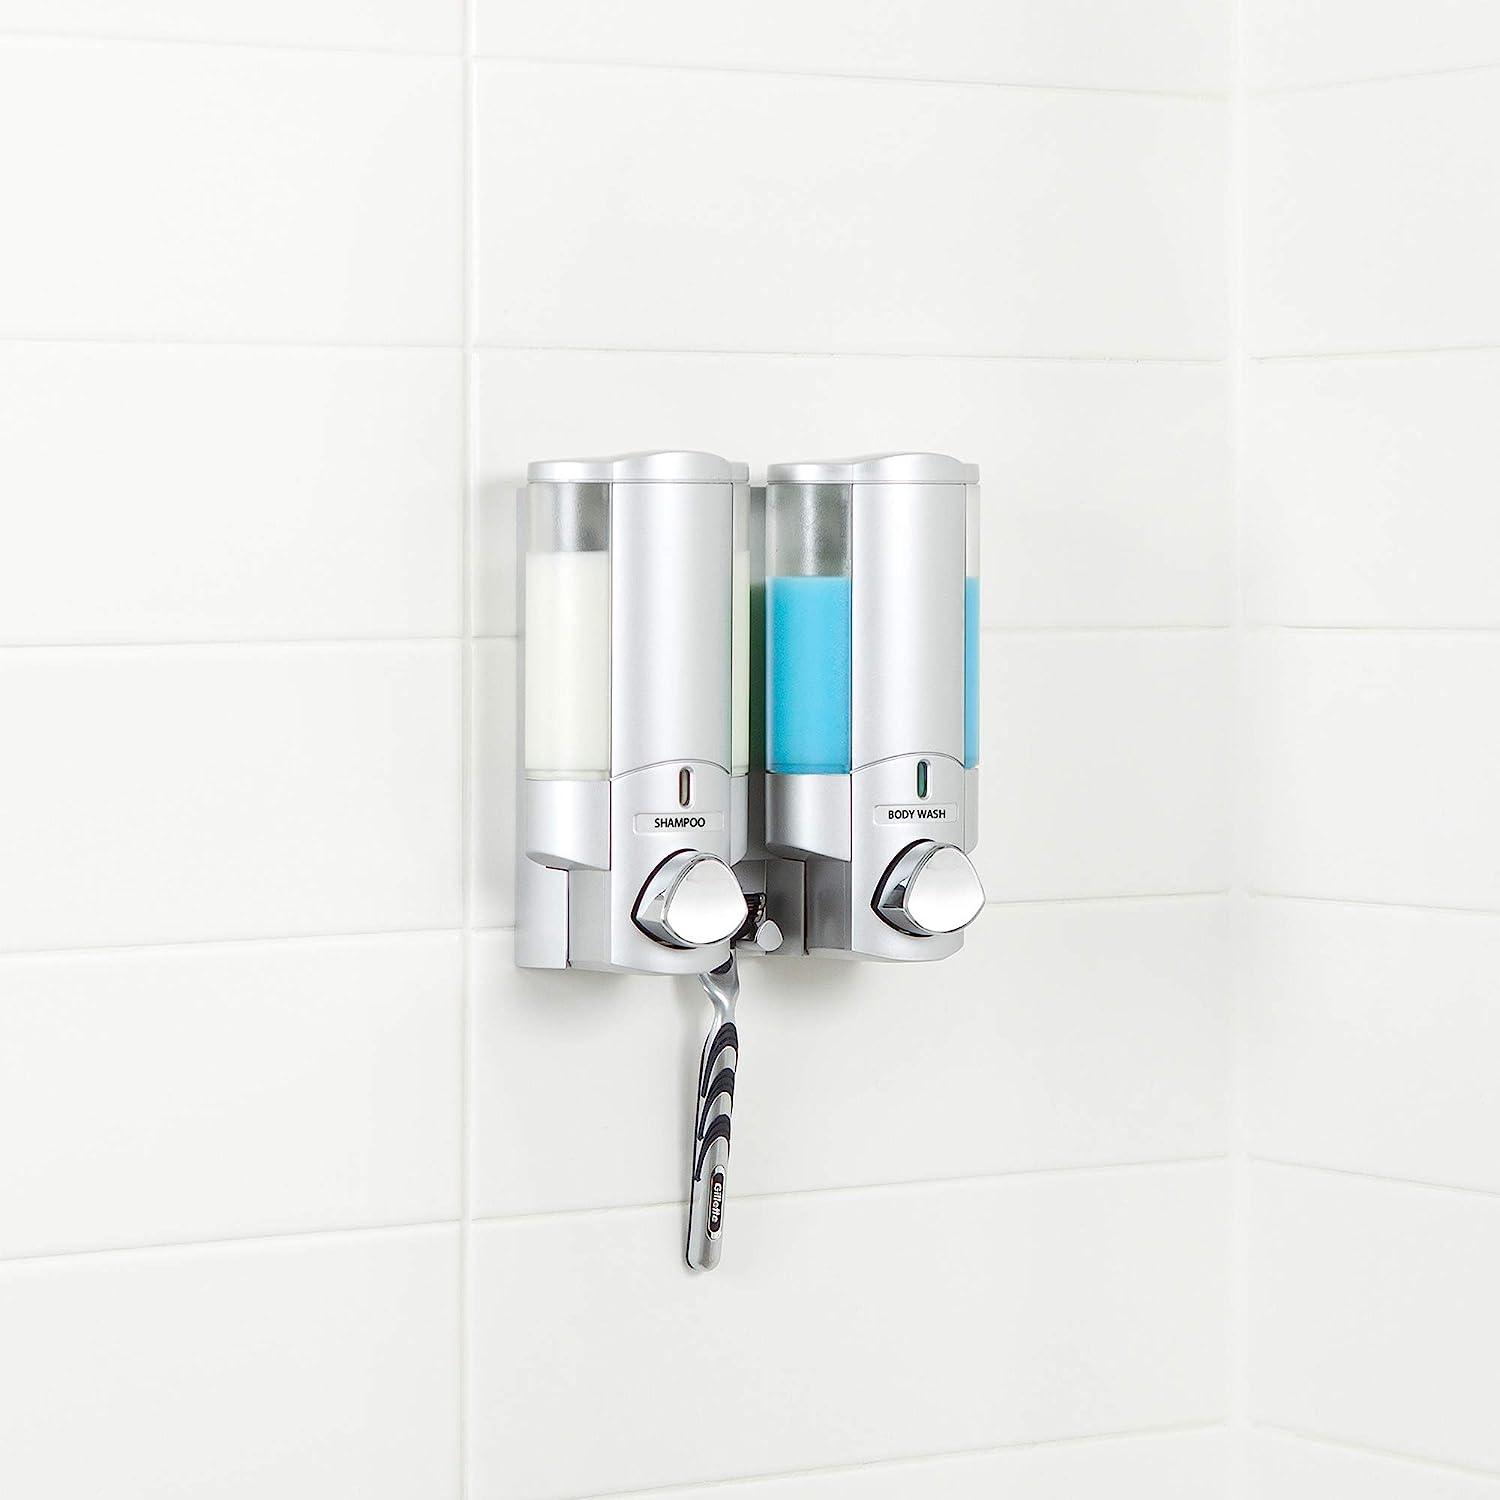 AVIVA - Dispensador de jabón y ducha, color plateado satinado